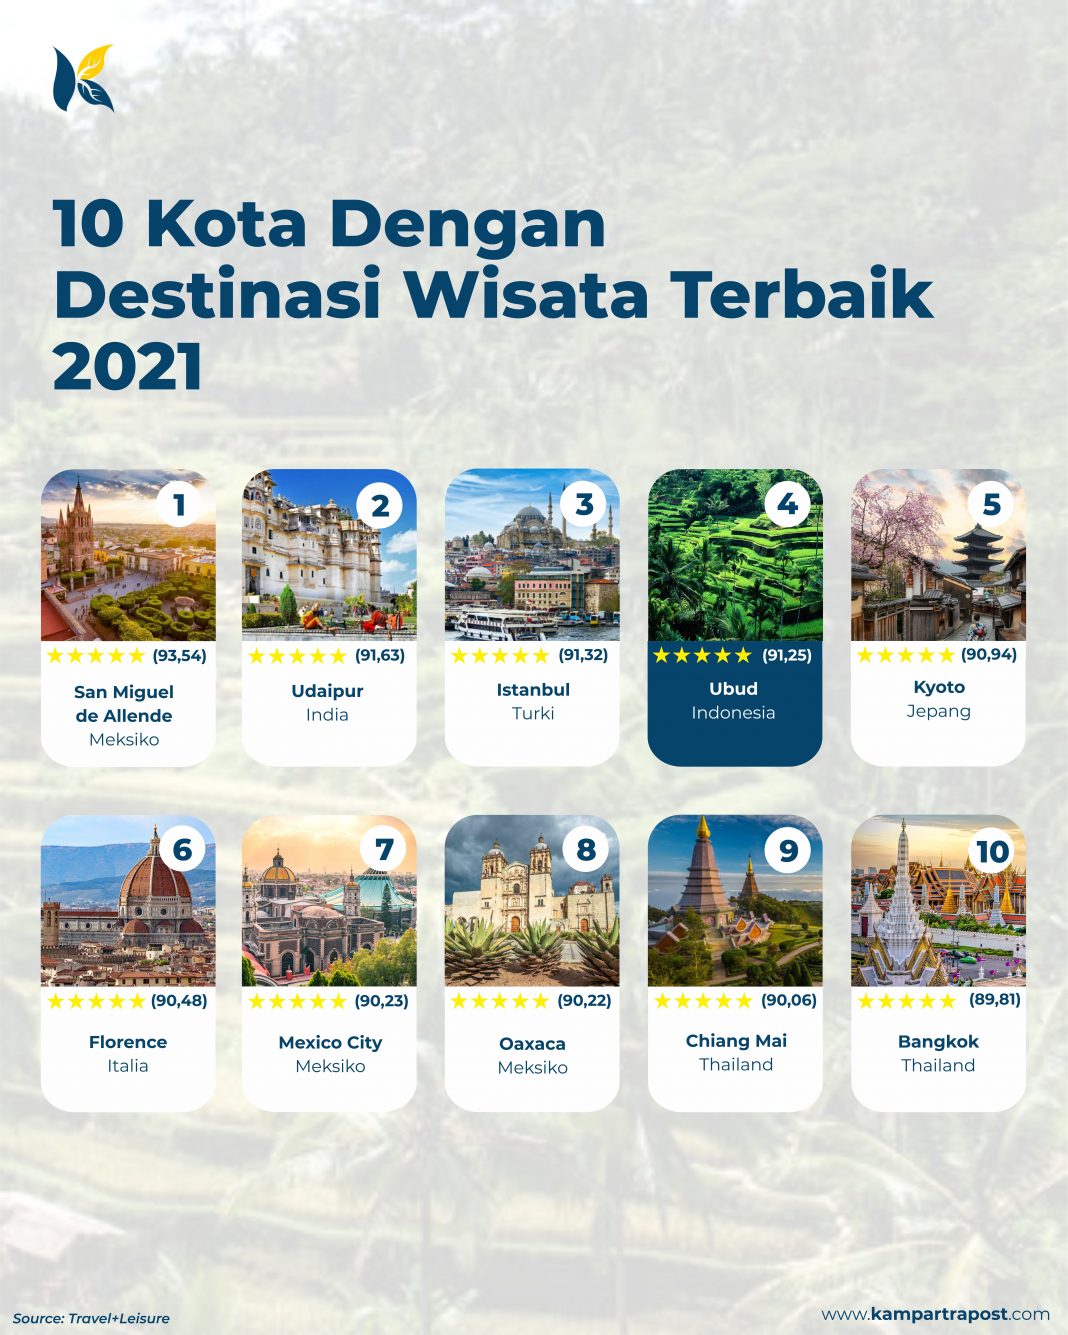 10 Kota Dengan Destinasi Wisata Terbaik 2021